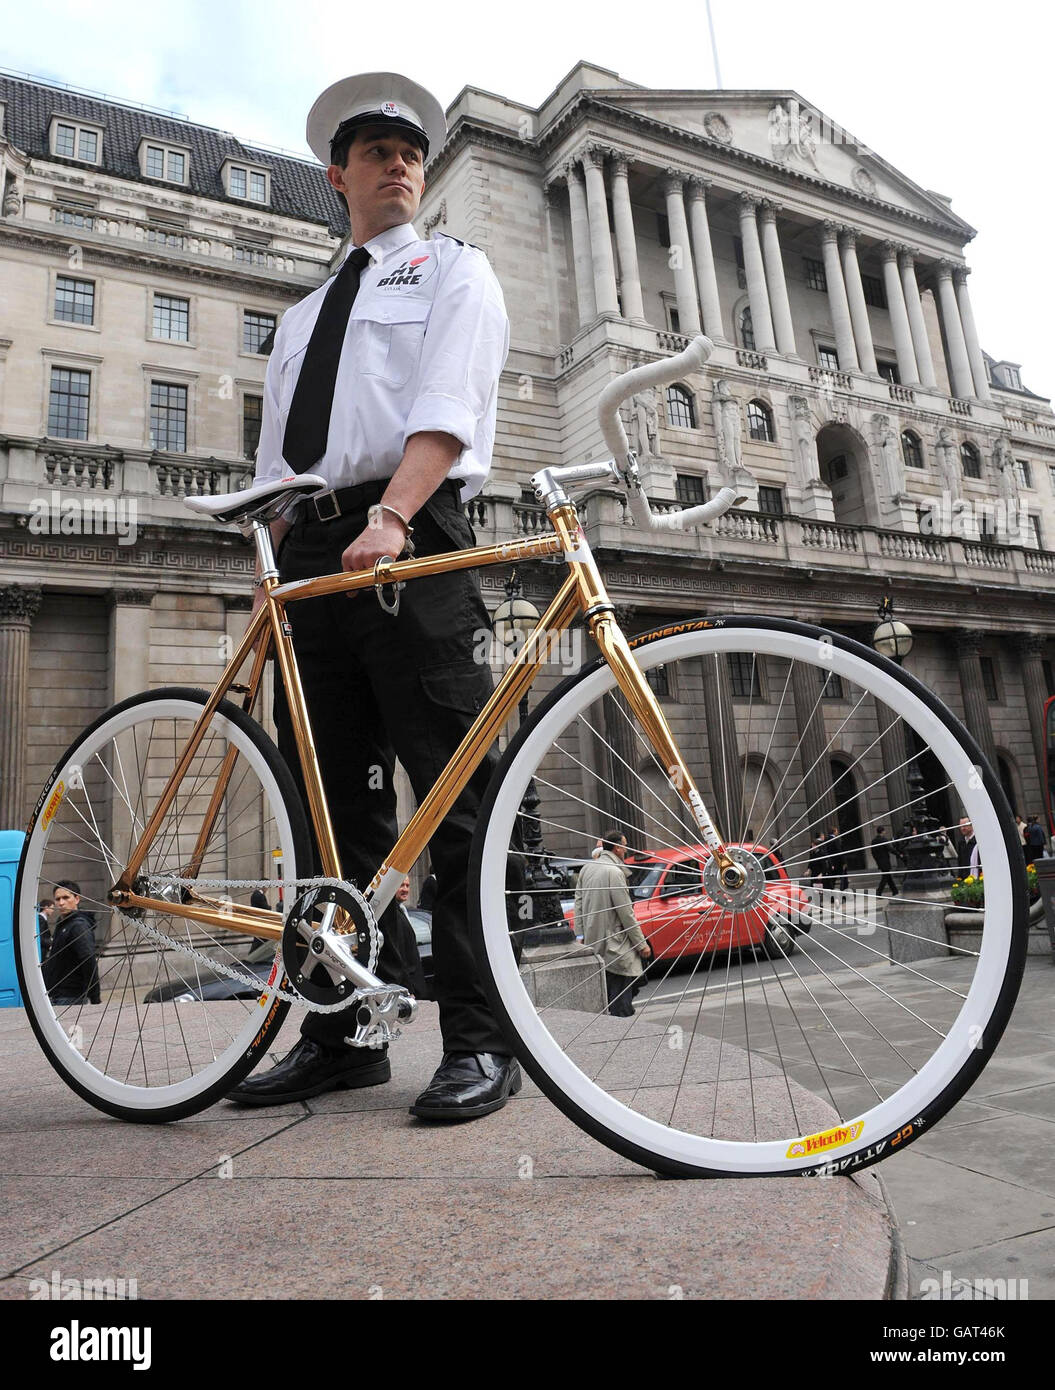 Yannick Read muestra una bicicleta con marco de oro de 24ct en venta para 9500. Encargada por la Asociación de Transporte Ambiental, la bicicleta tiene el extra opcional de un guardia de seguridad cuando se deja en público ya que las bicicletas no pueden ser aseguradas sobre el vale de 4000. Foto de stock